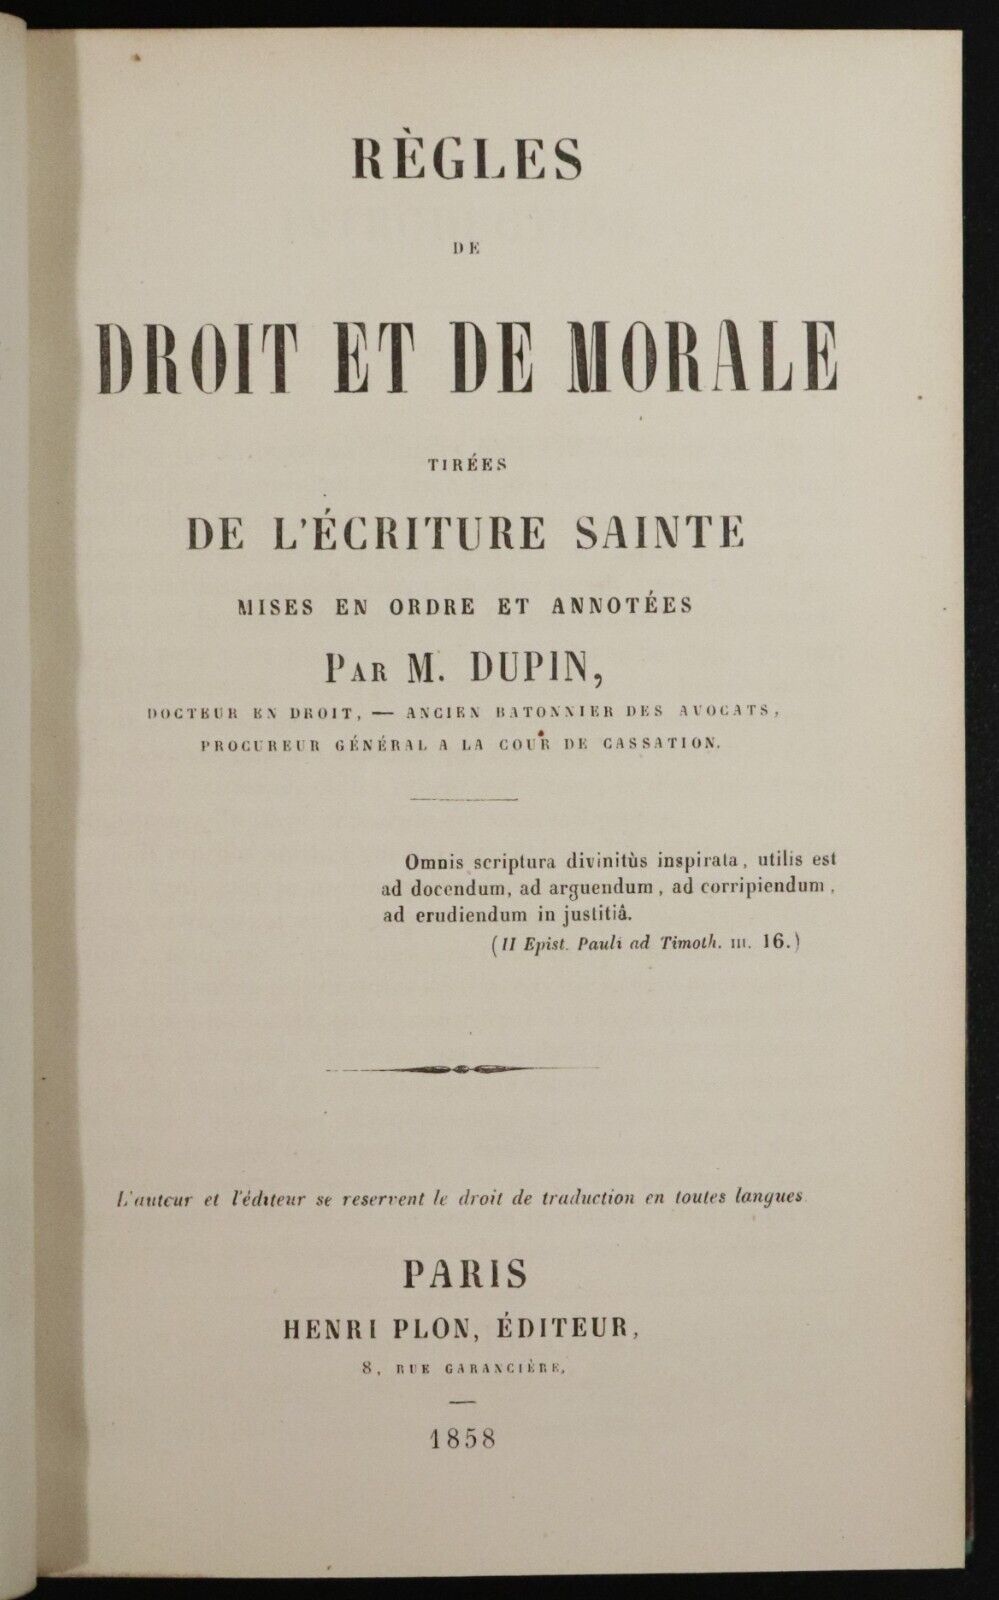 1858 Règles de Droit et de Morale by M. Dupin Antiquarian French Theology Book